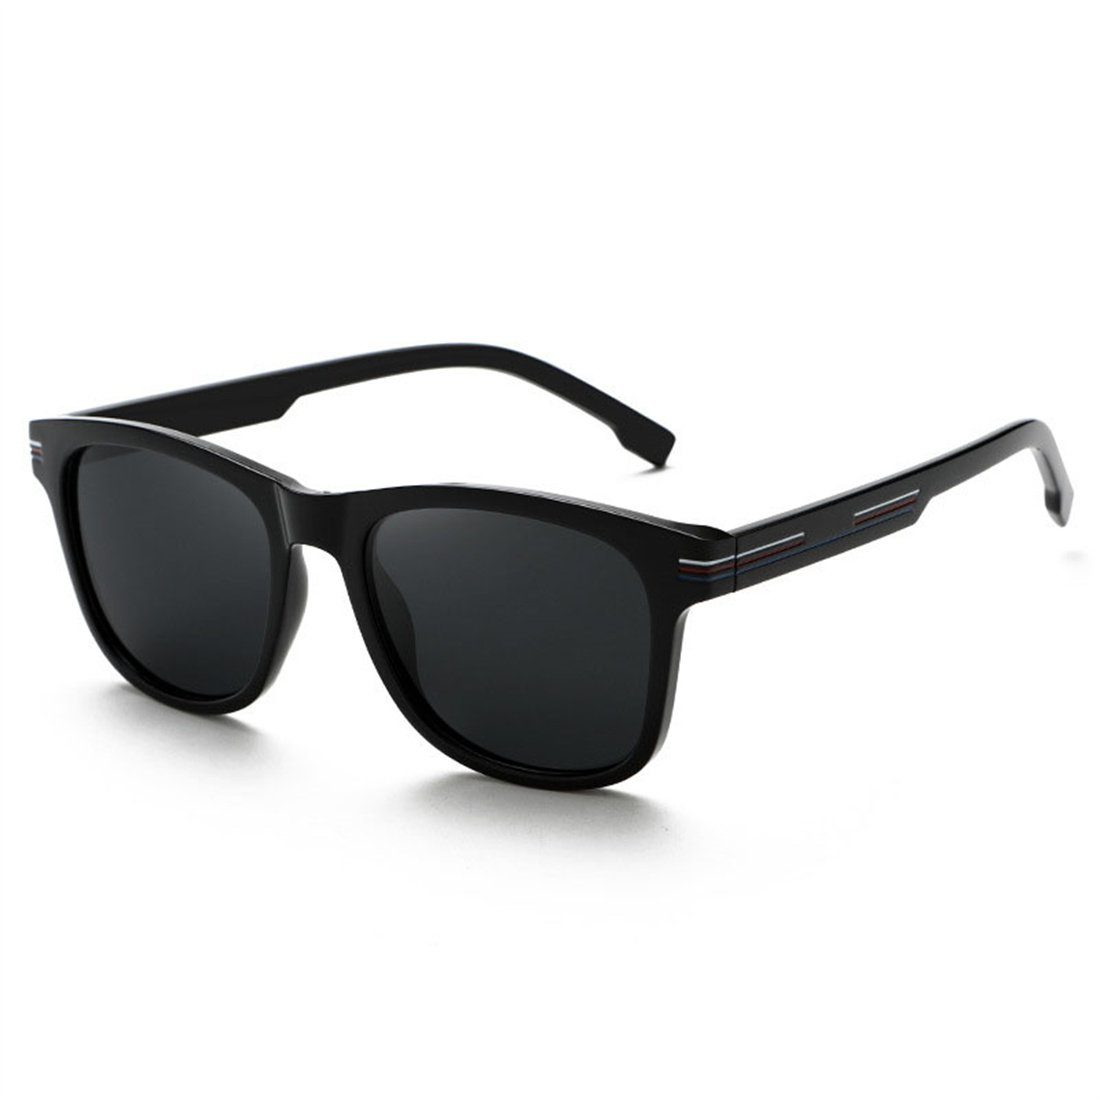 DÖRÖY Sonnenbrille Polarisierende Retro-Sonnenbrille für Männer, Outdoor-Sonnenbrille